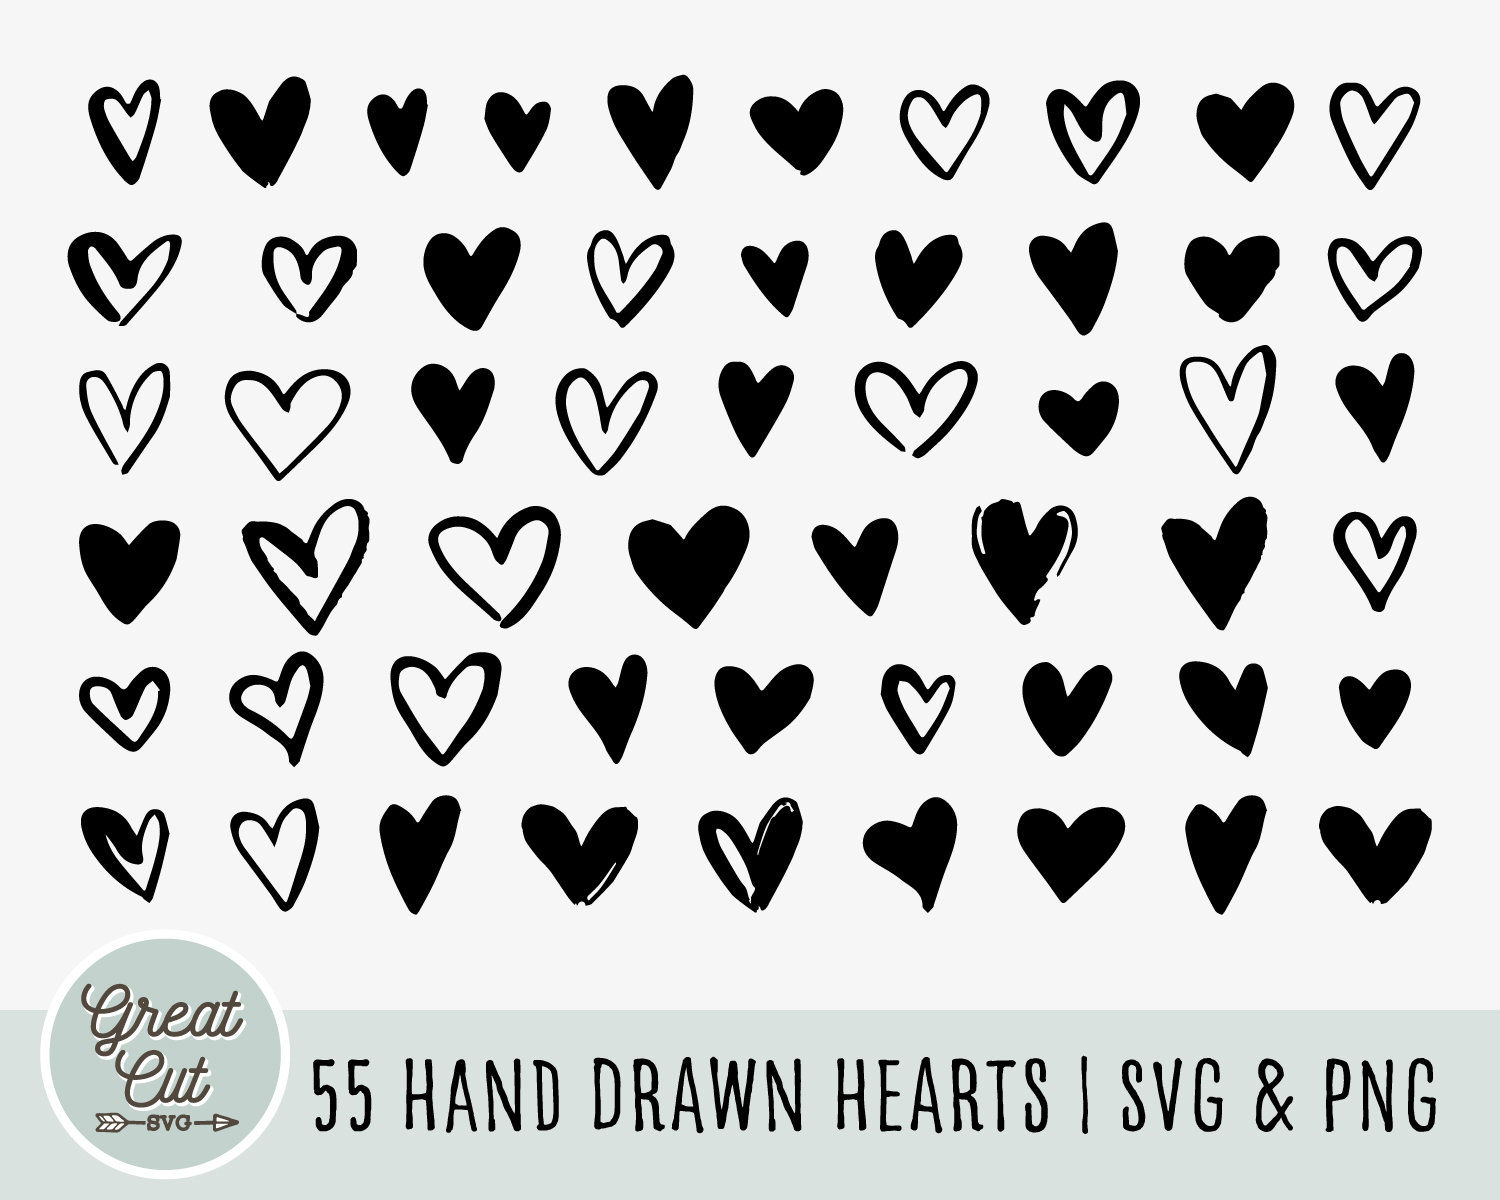 Sketched hearts Svg, Hearts Svg, Love heart Svg, Heart Outline Svg, jpg &  png.